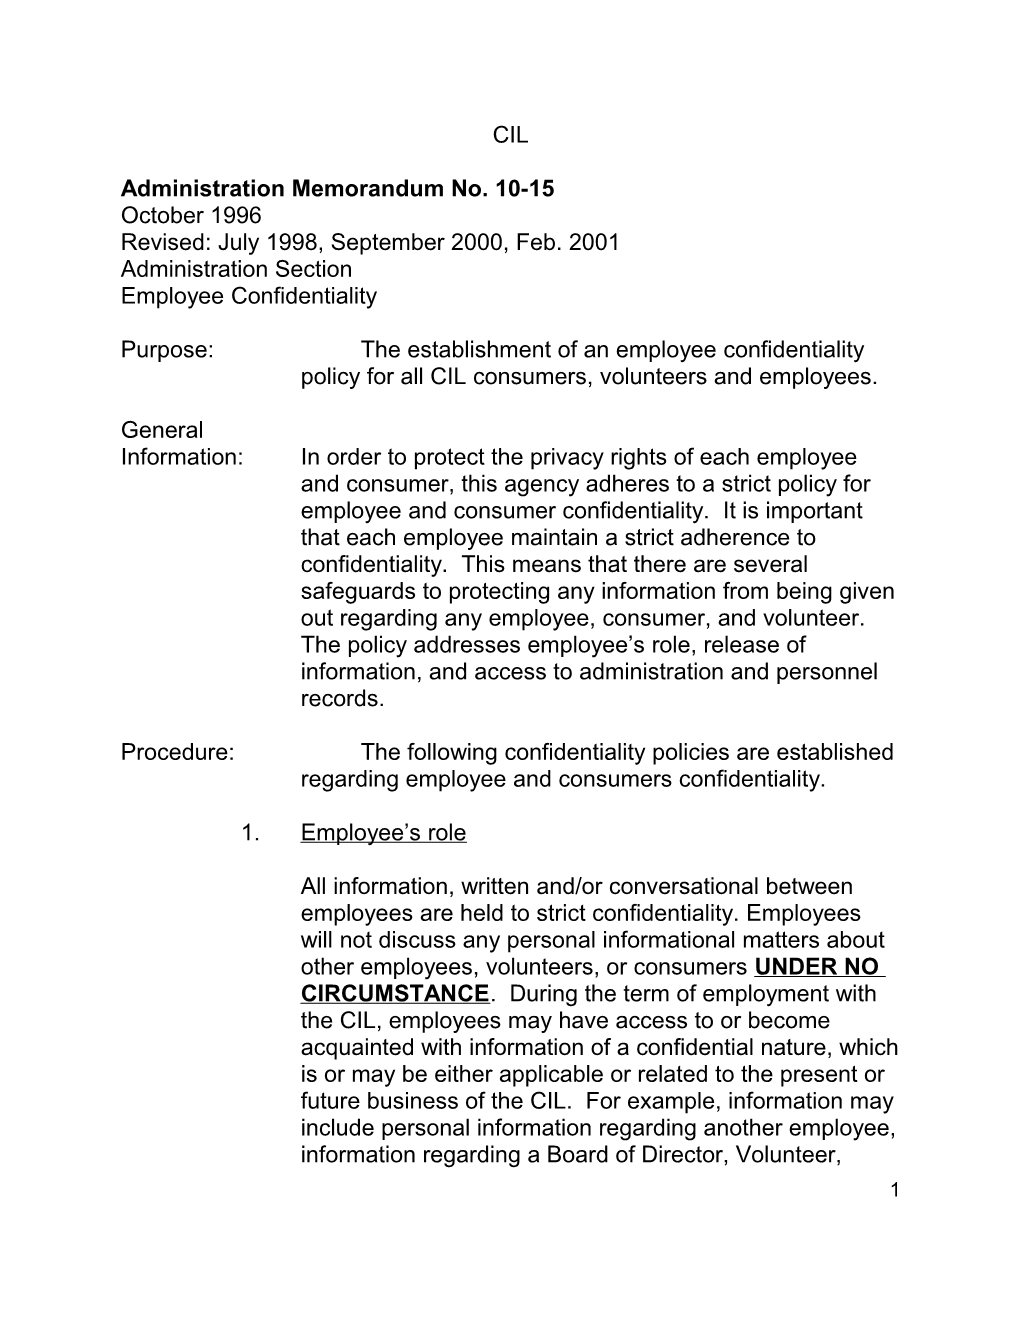 Administration Memorandum No. 10-15